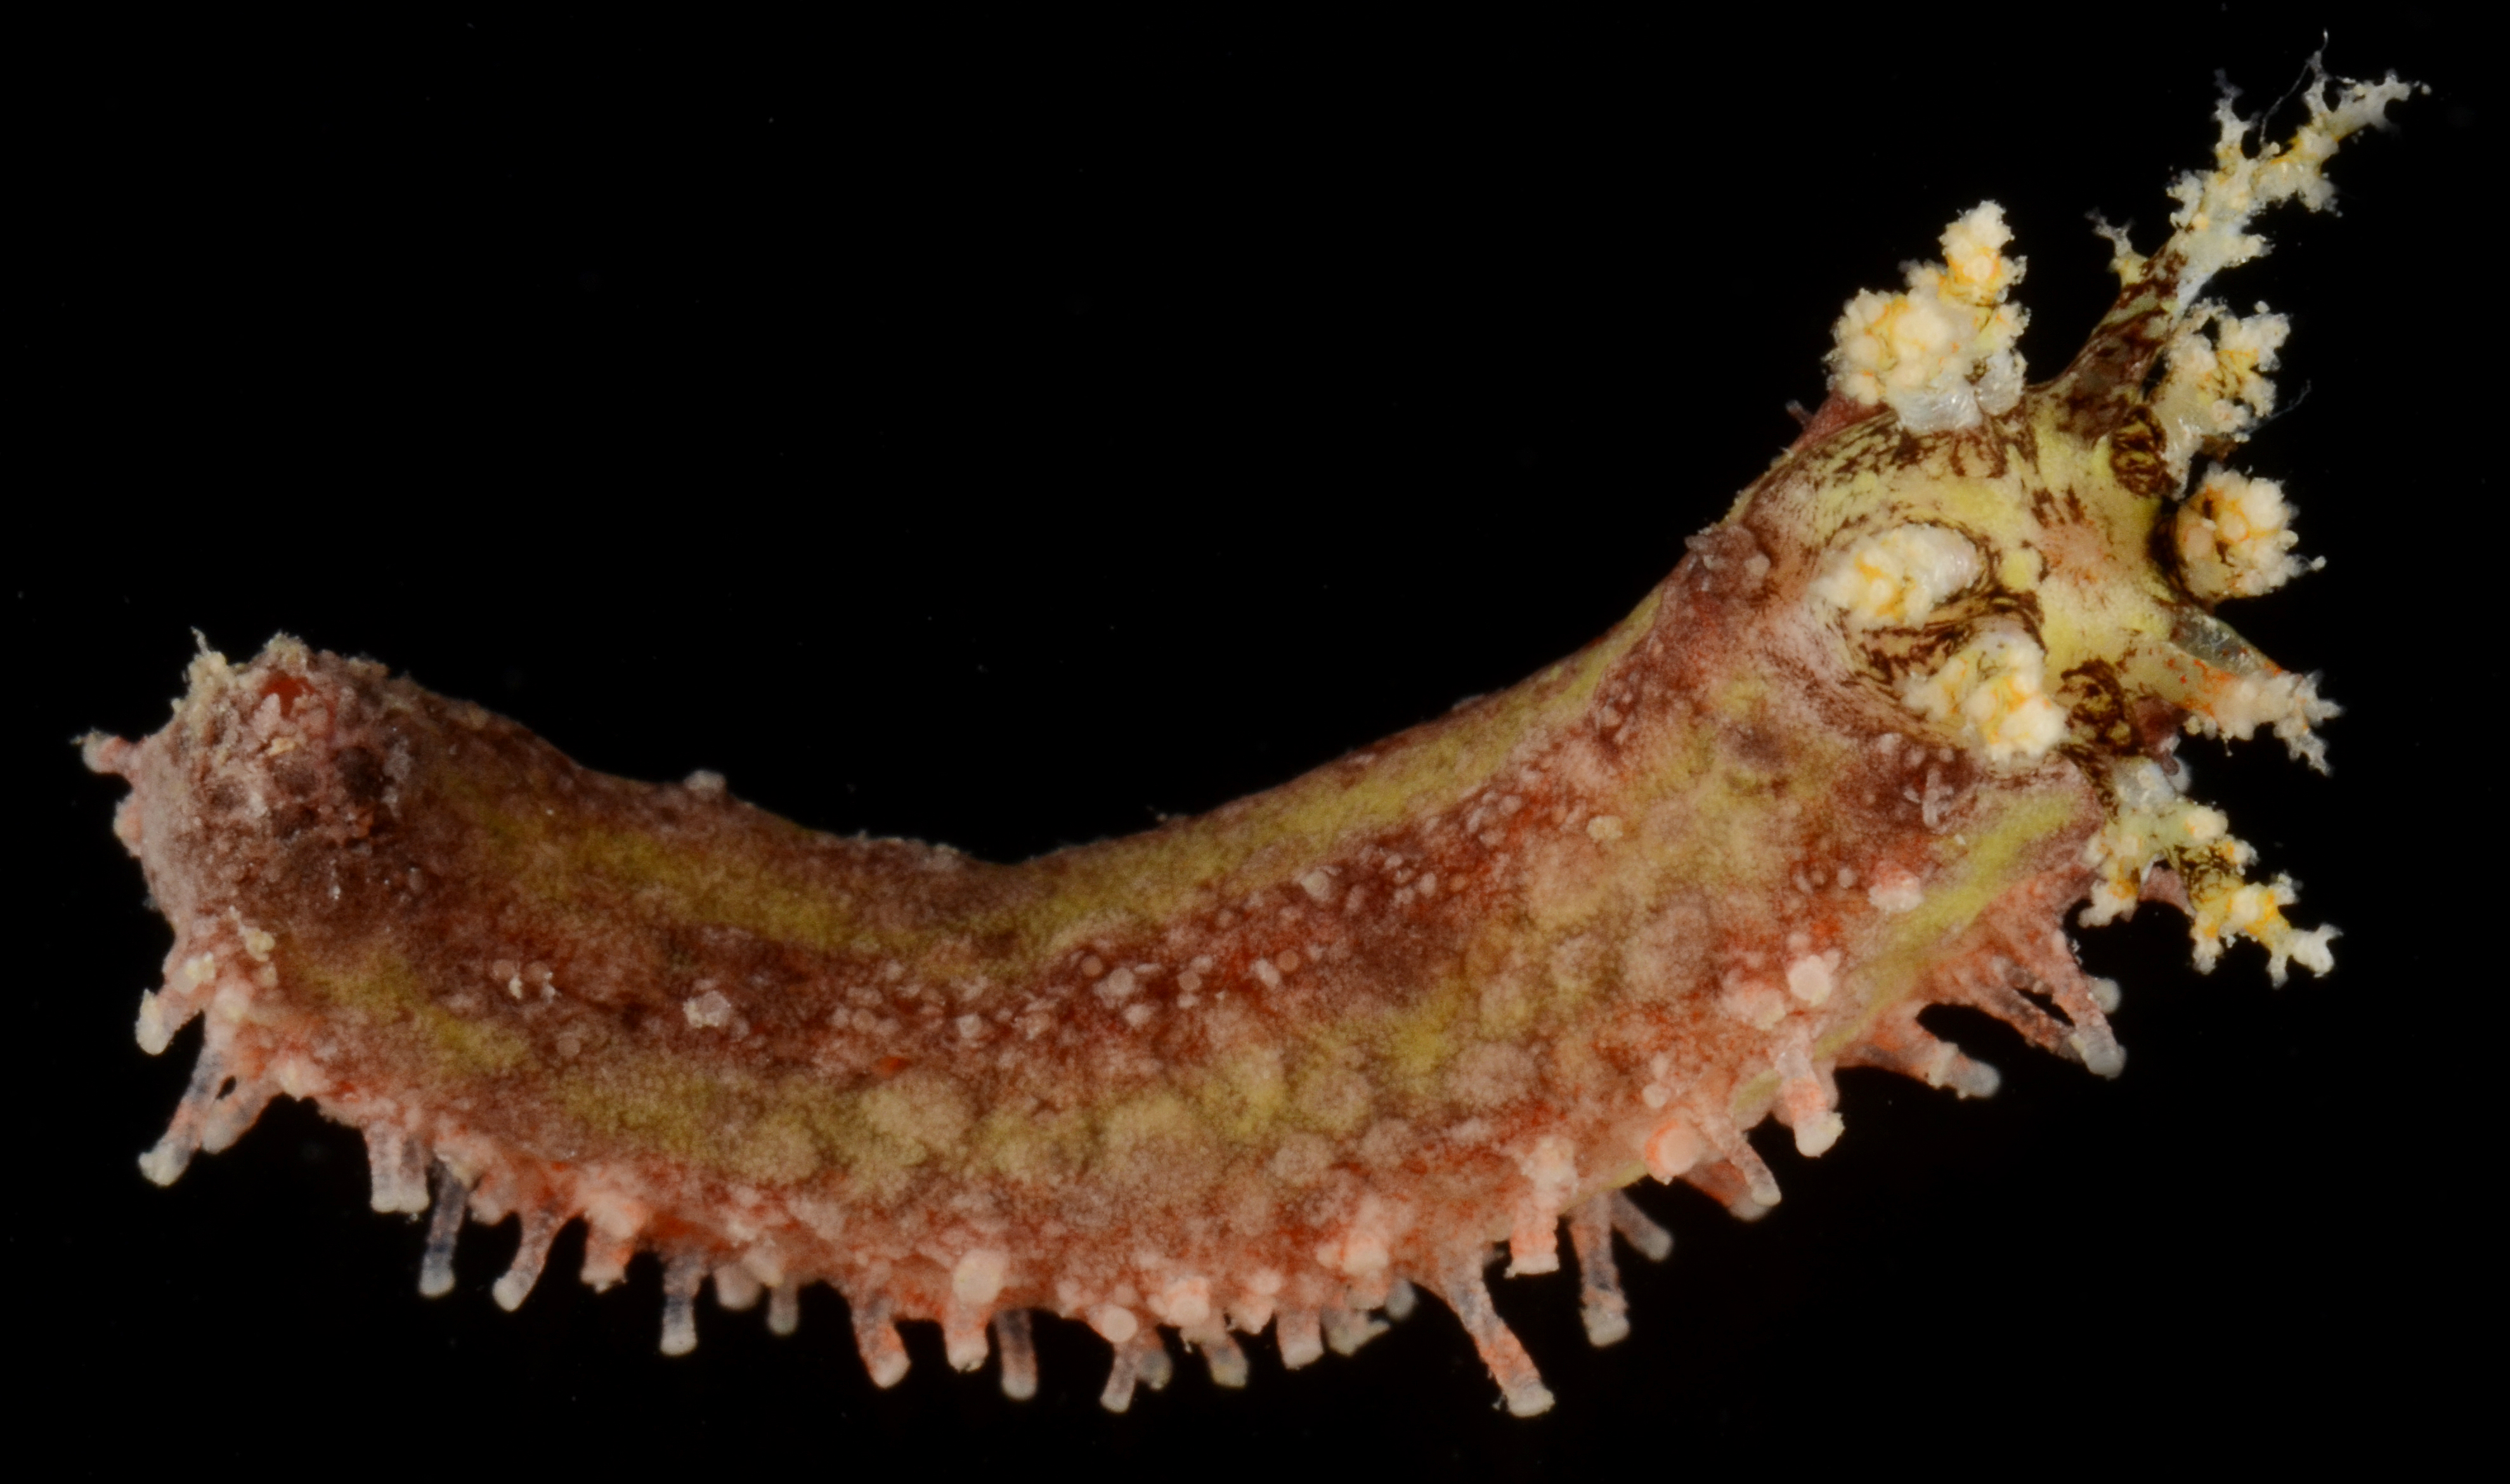 Plesiocolochirus image